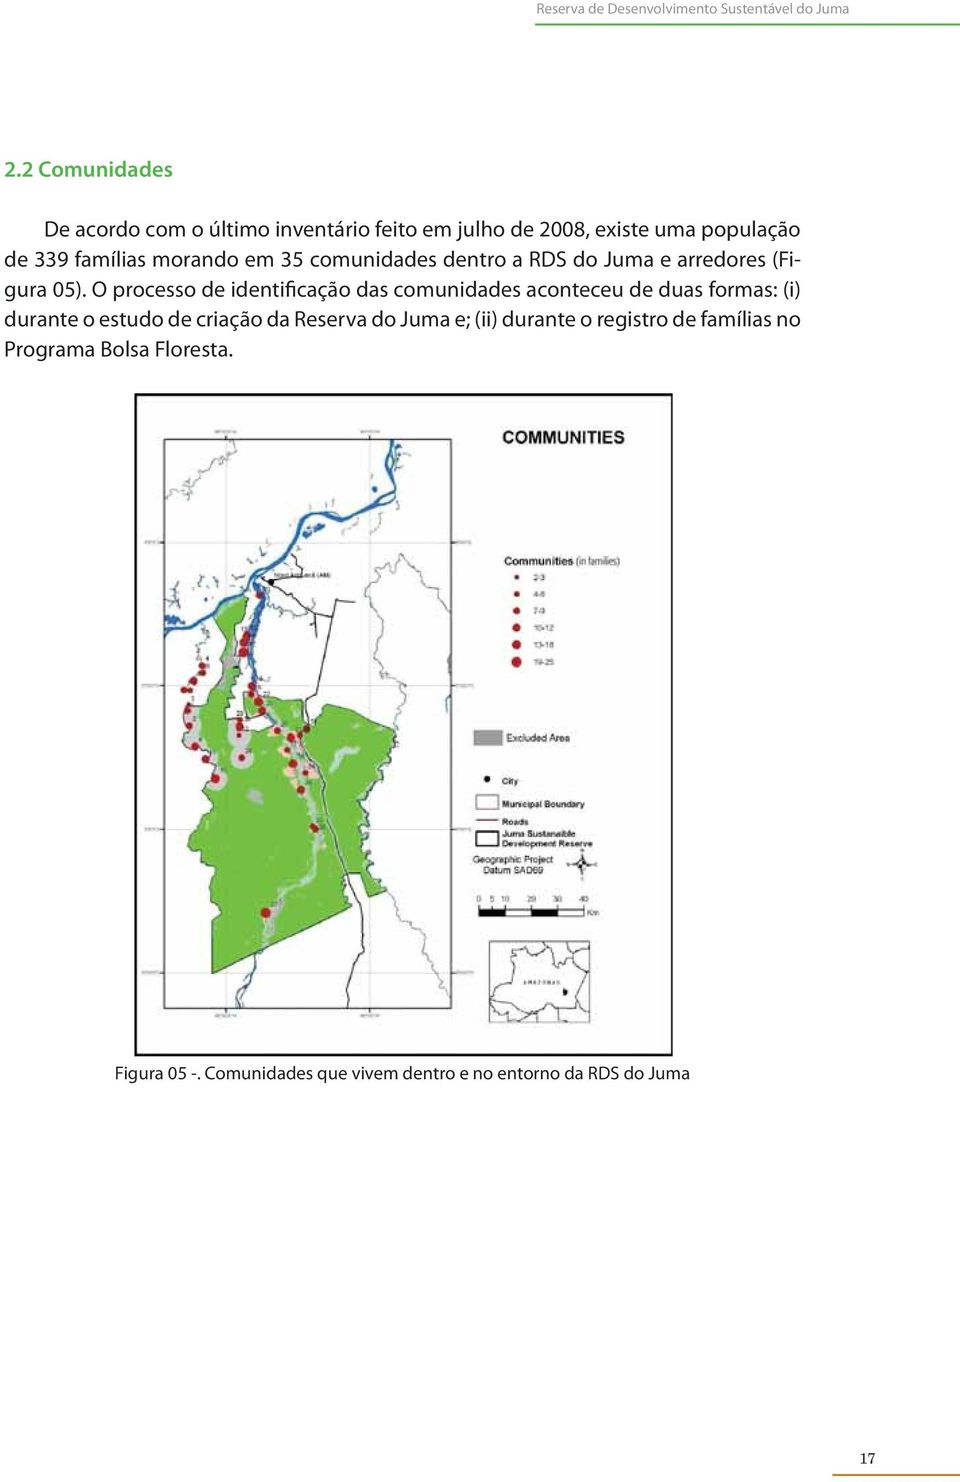 comunidades dentro a RDS do Juma e arredores (Figura 05).